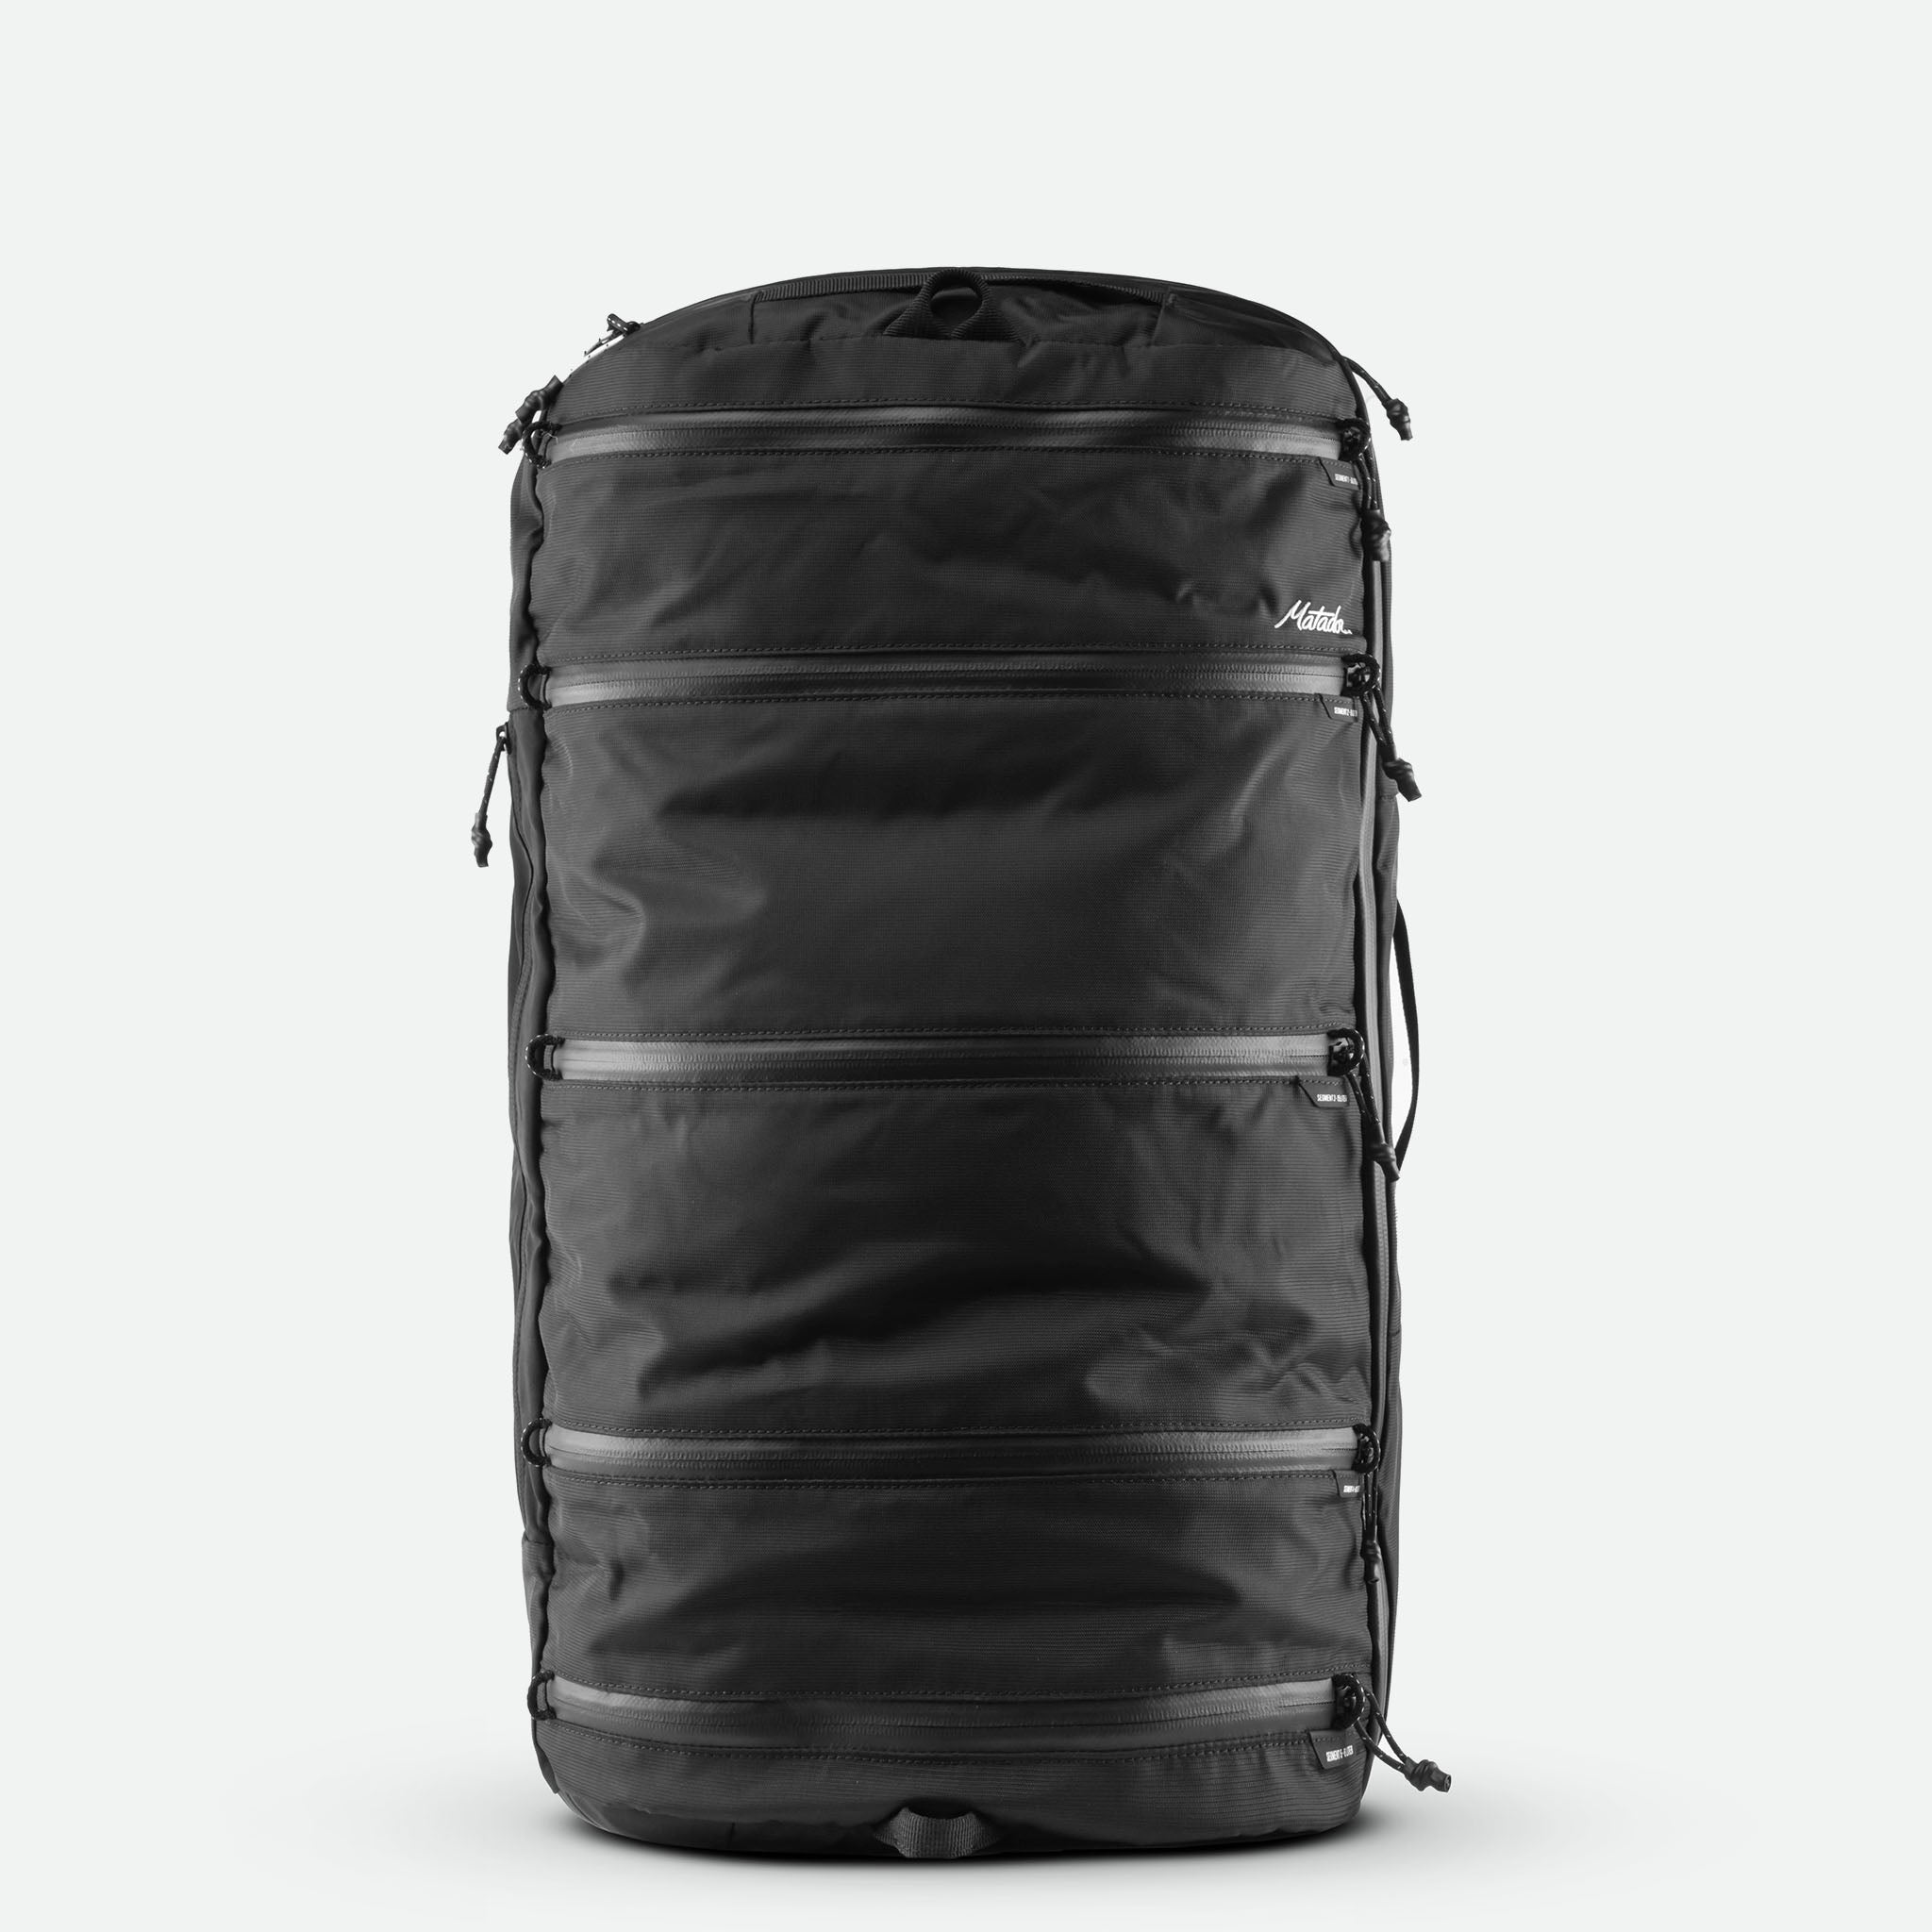 SEG45 Travel Pack - rejsetaske med 45 liters kapacitet - kan bæres som rygsæk og duffel bag - integrerede packing cubes